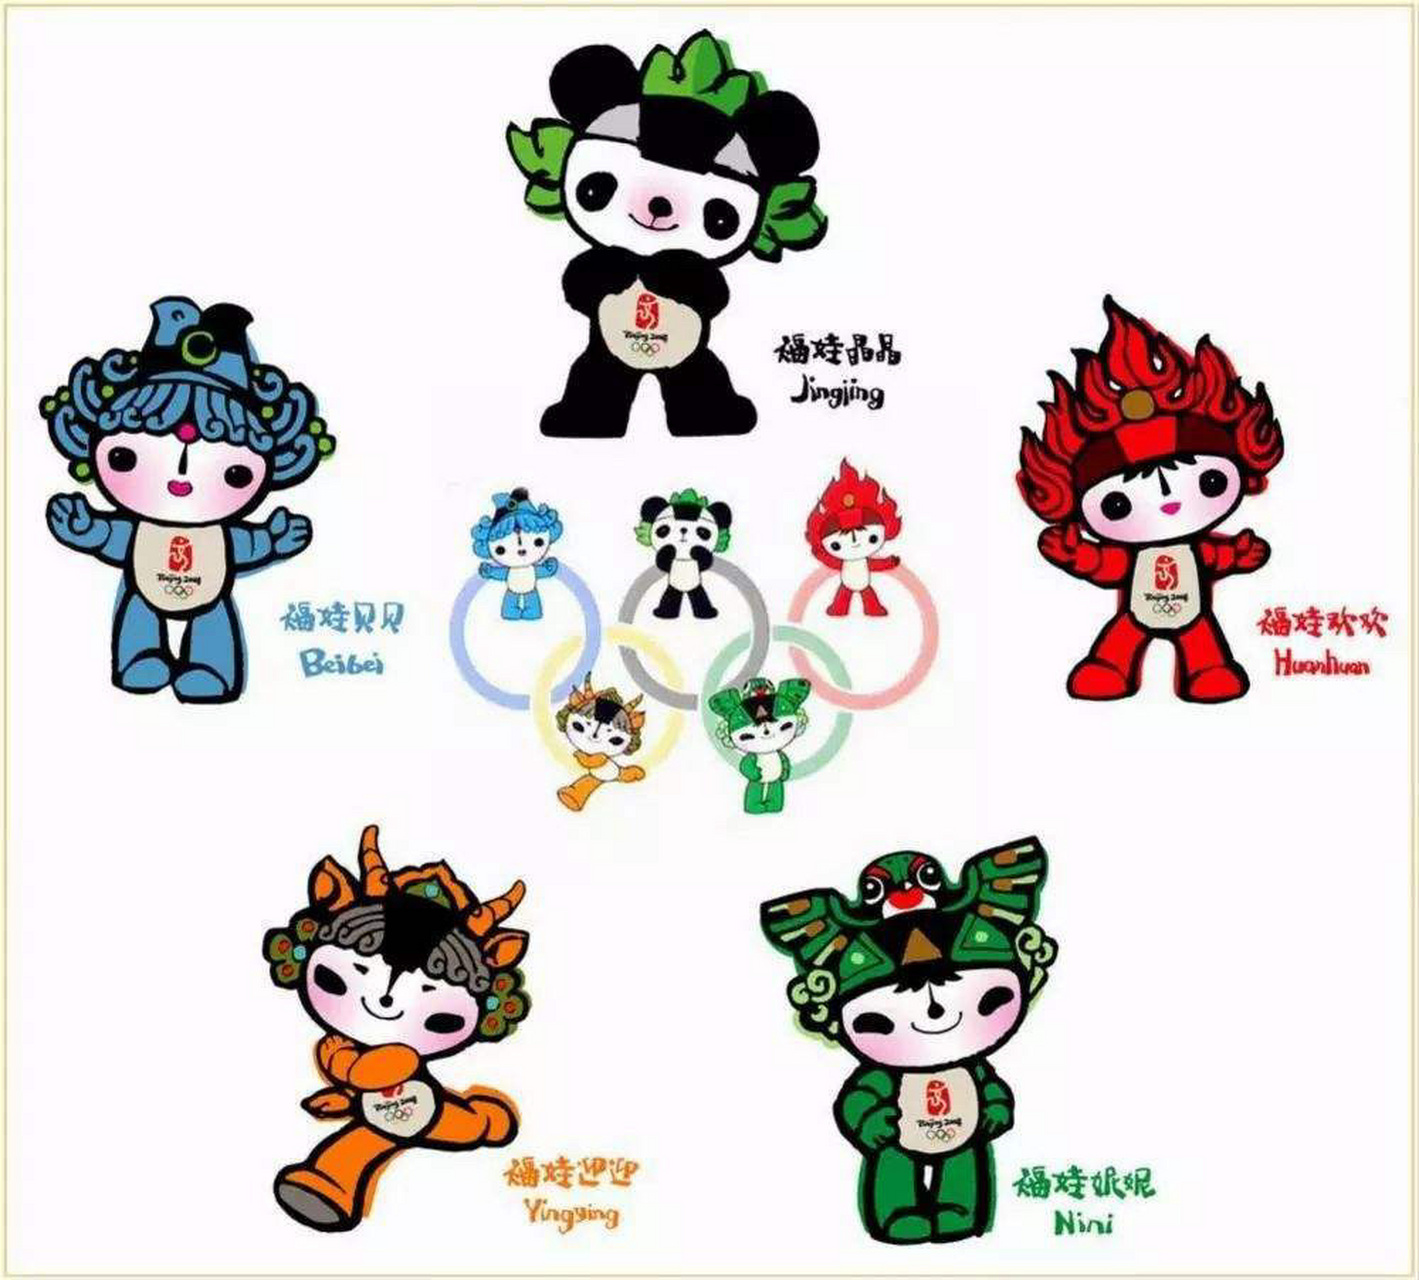 2008年北京奥运会吉祥物 2008年北京奥运会吉祥物 五个福娃分别叫